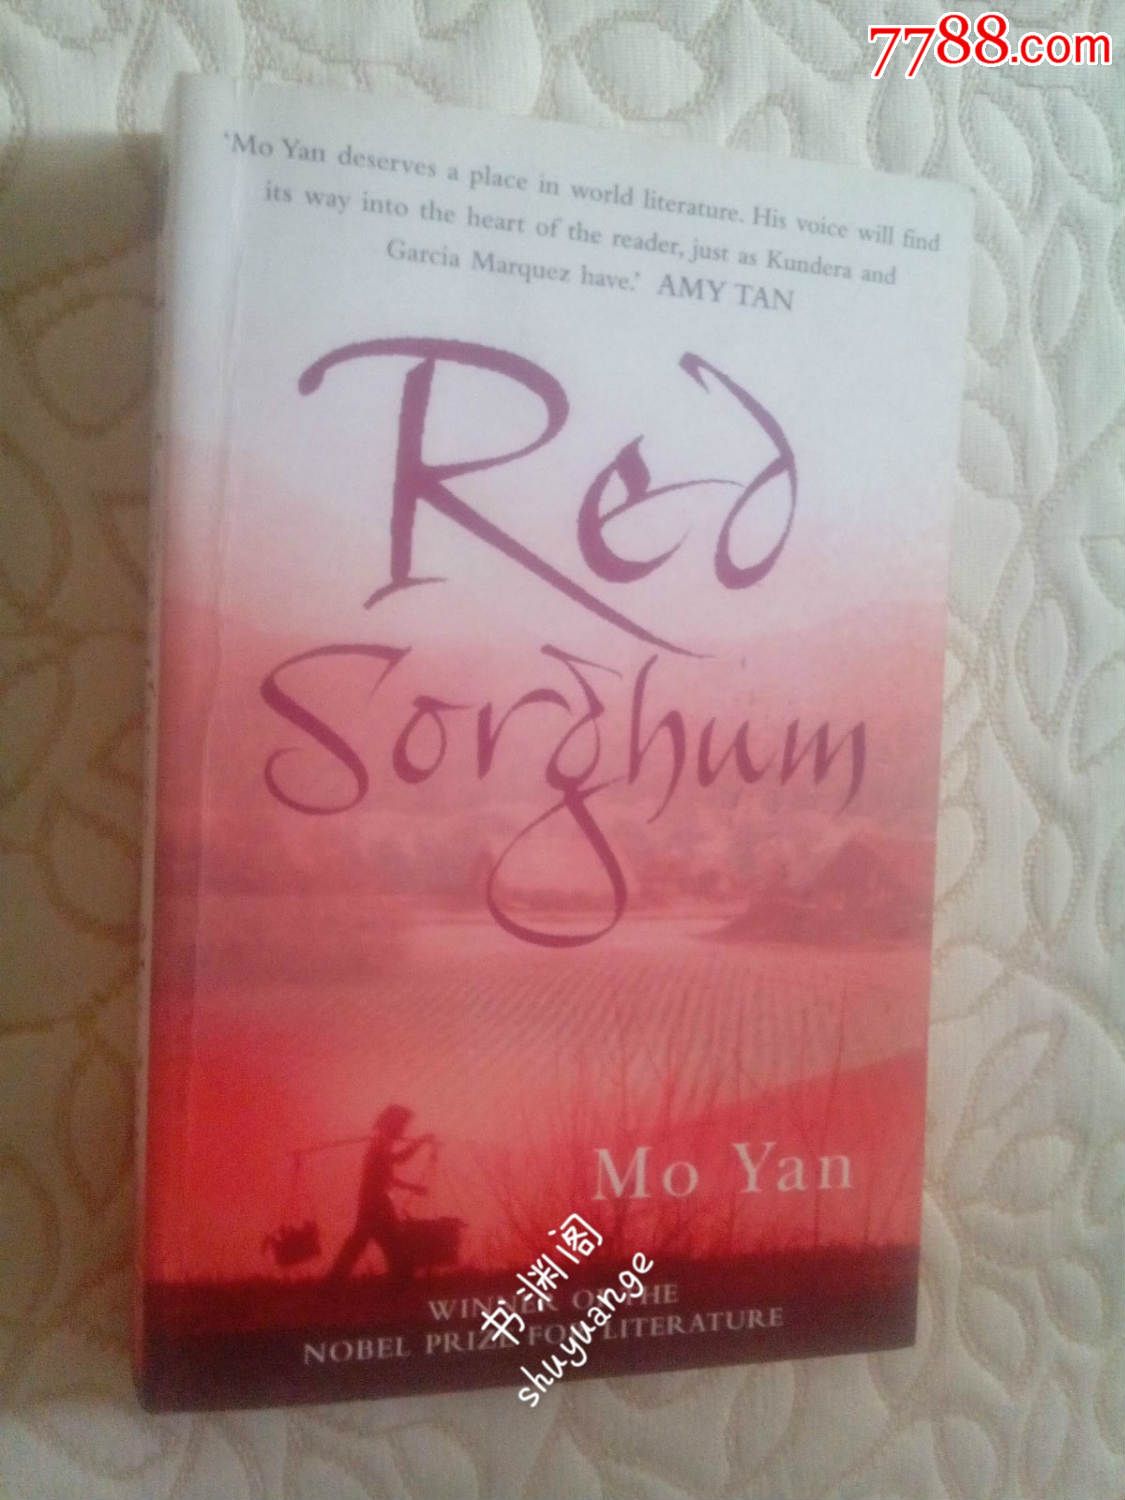 RedSorghum(红高粱,英文原版小说,内有红笔划